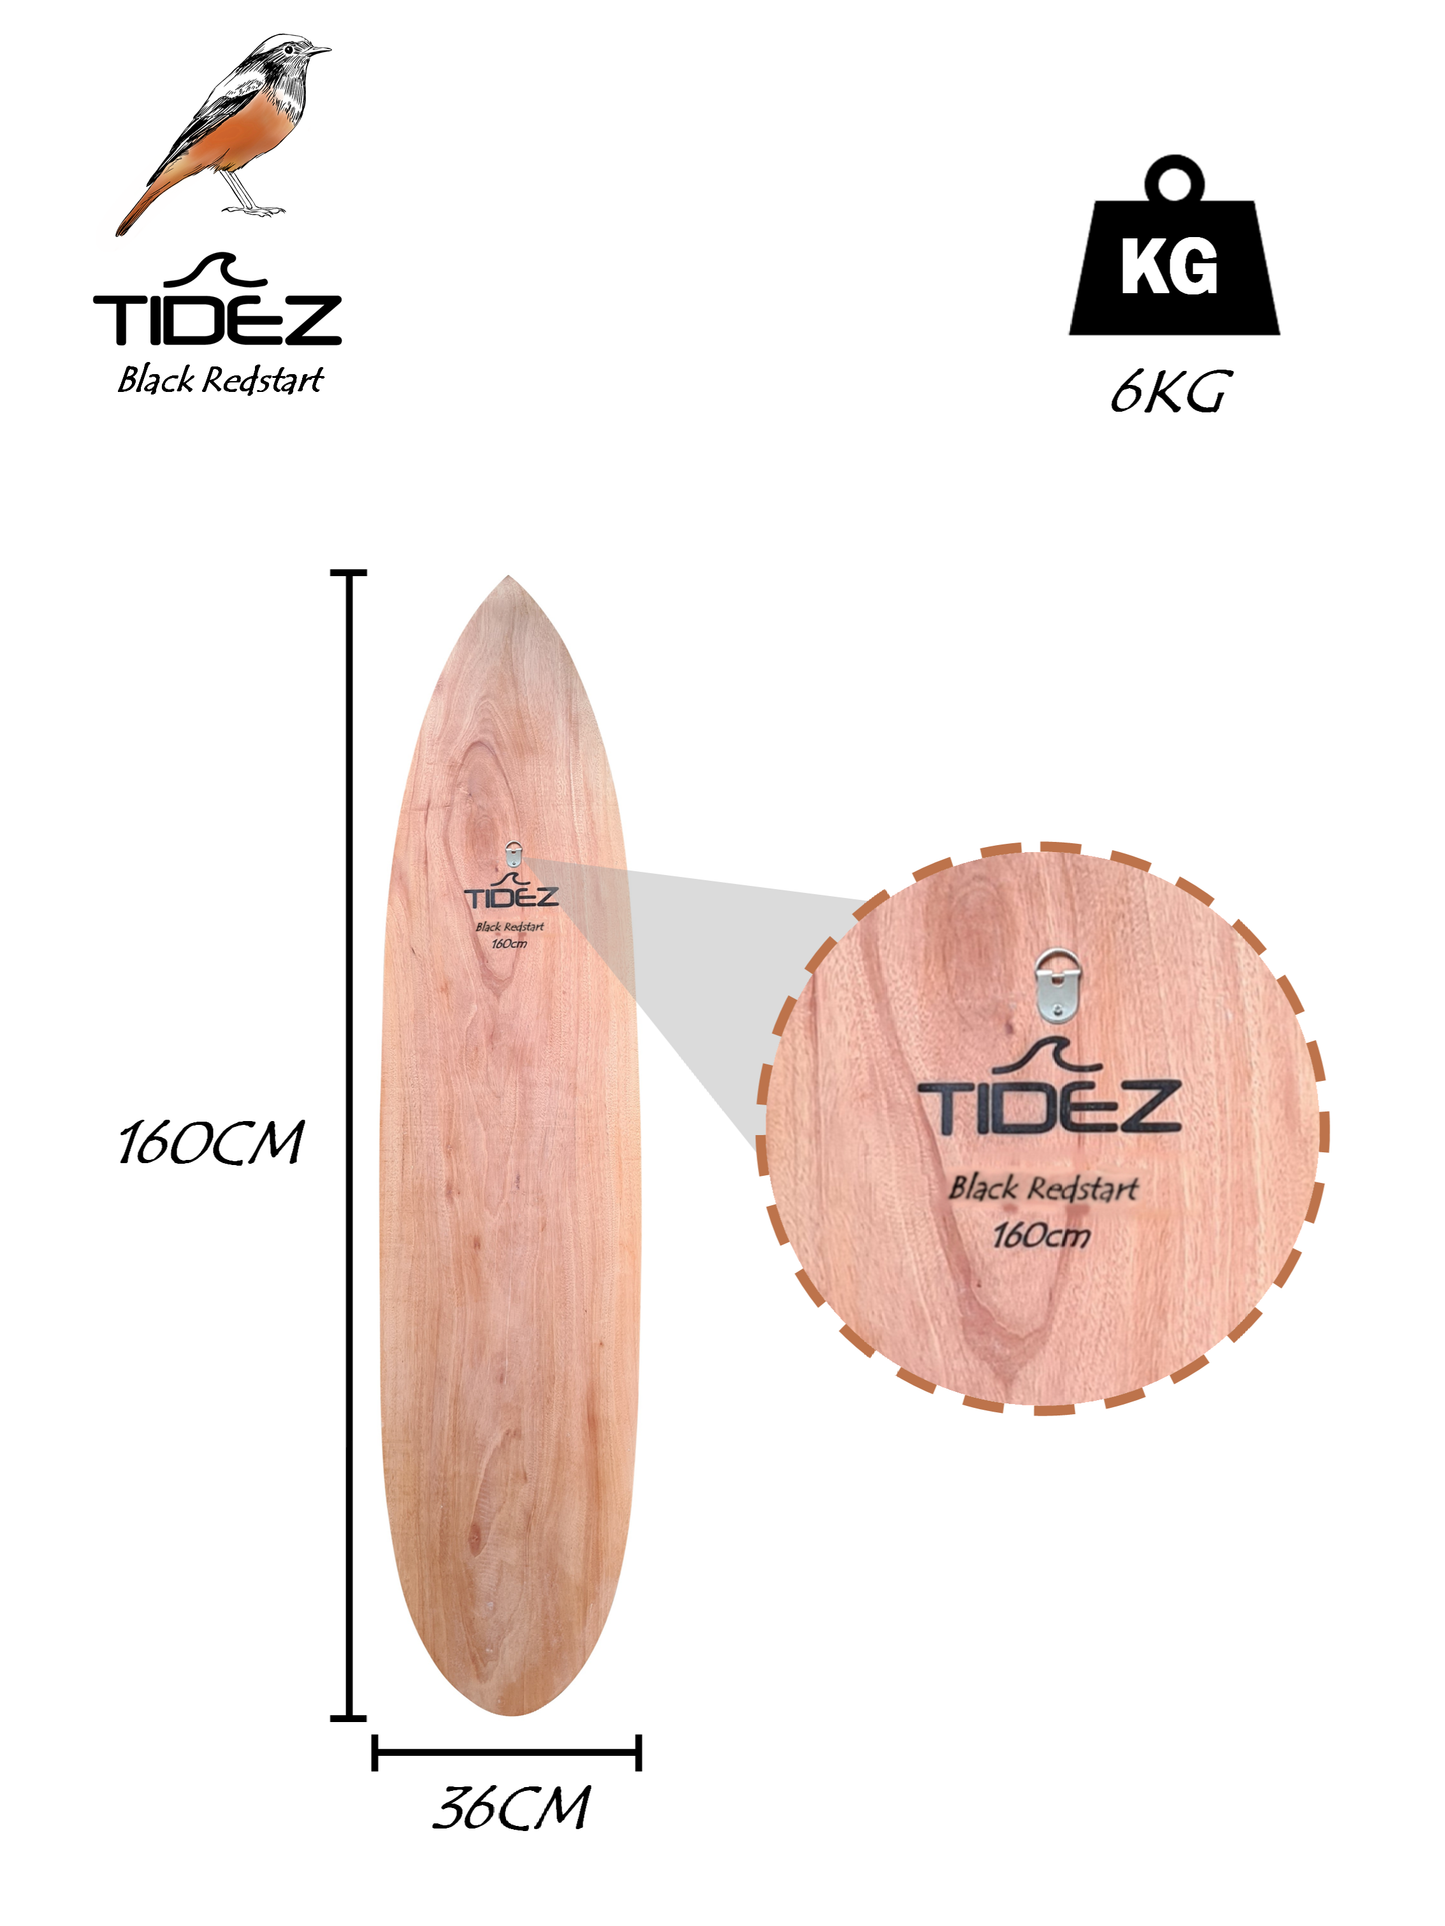 Tidez Black Redstart 160cm